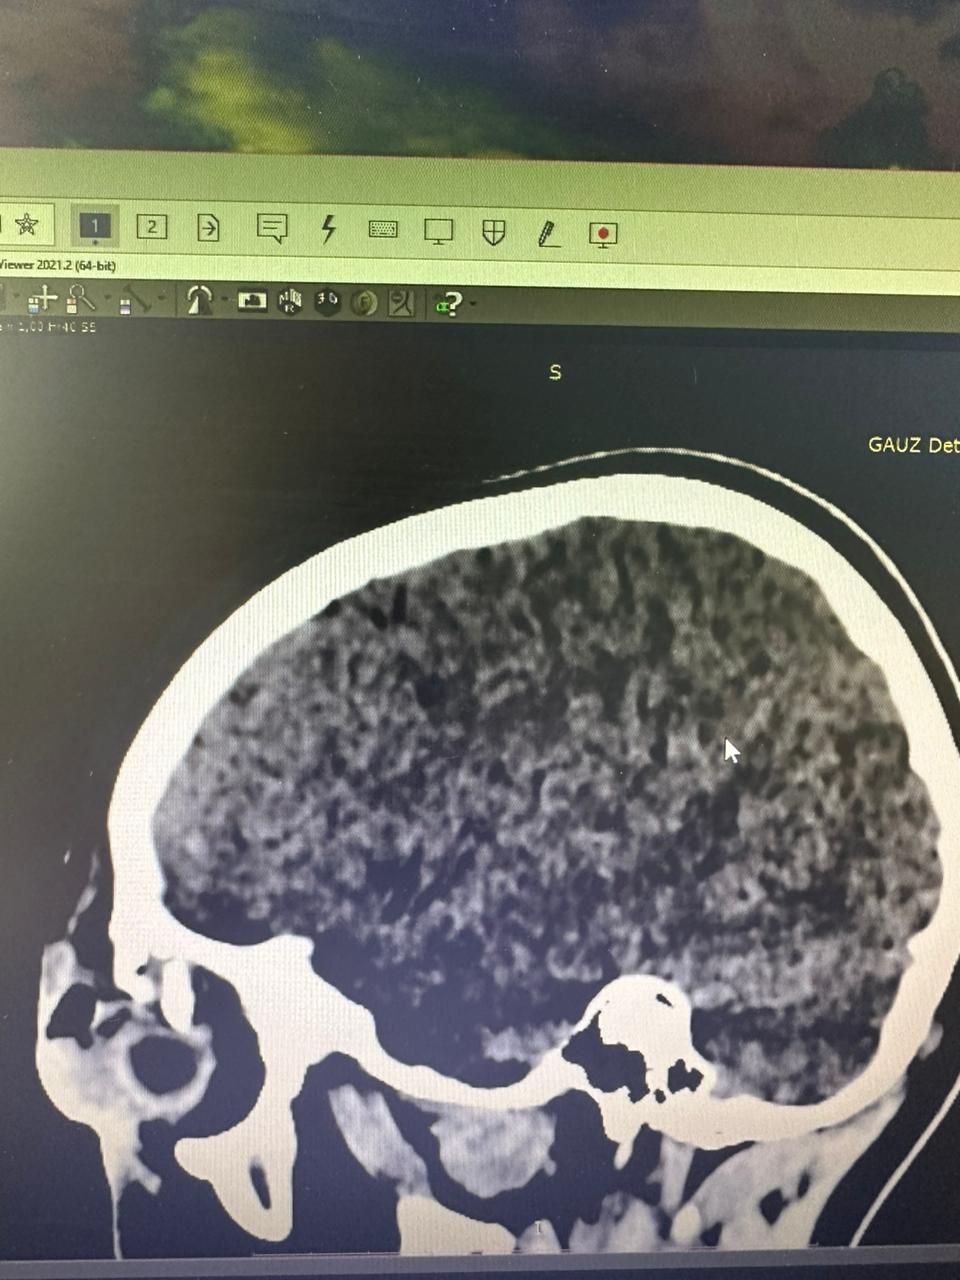 В приемно-диагностическое отделение ГАУЗ «Детская республиканская клиническая больница» г. Улан-Удэ доставили девятилетнего мальчика, которого конь лягнул в лоб, чуть выше глаза. Ребенок предъявлял жалобы на двоение в глазах и головную боль. На МРТ выявили перелом костей черепа в надглазничной области со смещением глазного яблока. Существовал высокий риск перфорации, поскольку осколки верхней стенки орбиты находились очень близко к глазу, один из отломков — в миллиметре.